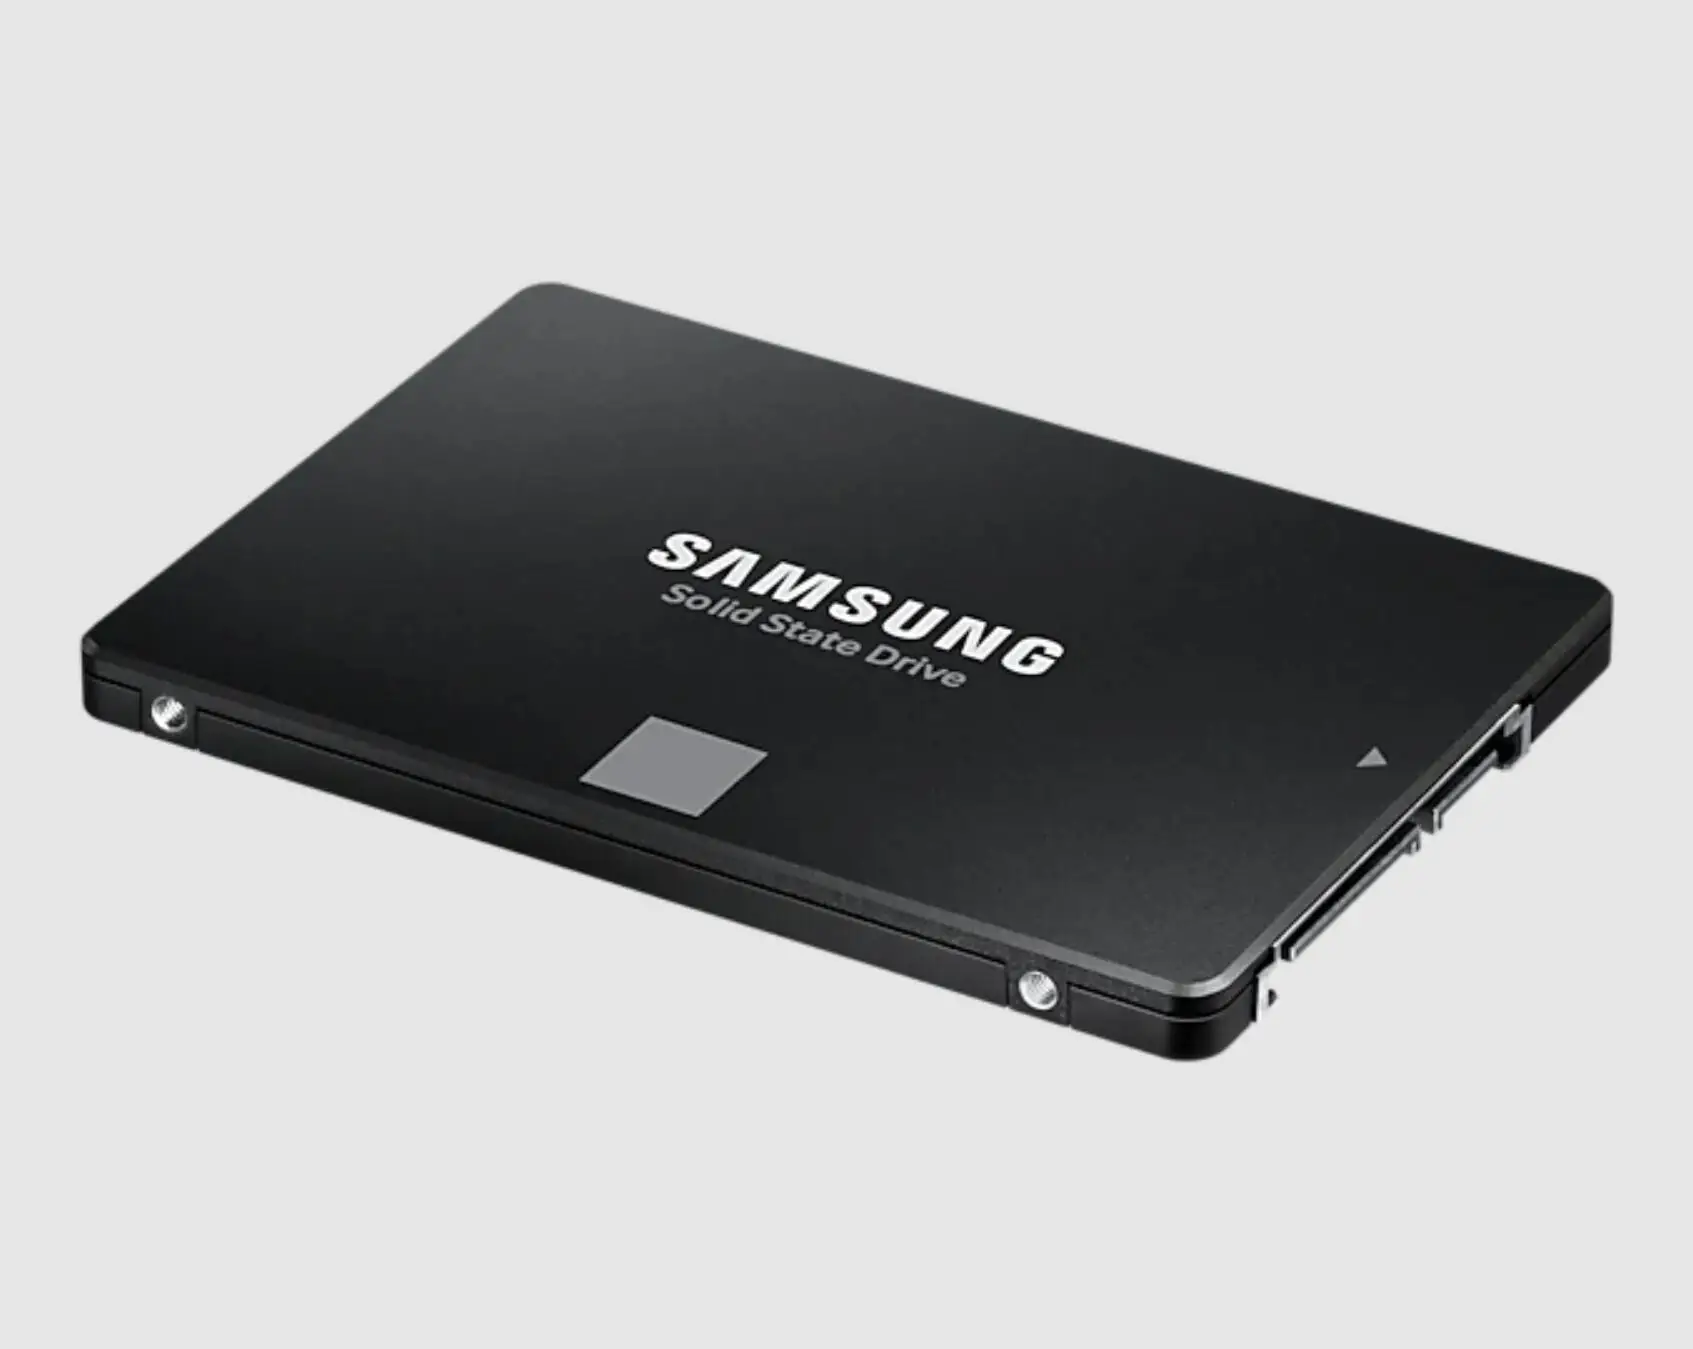 Samsung 870 Evo 500 Купить